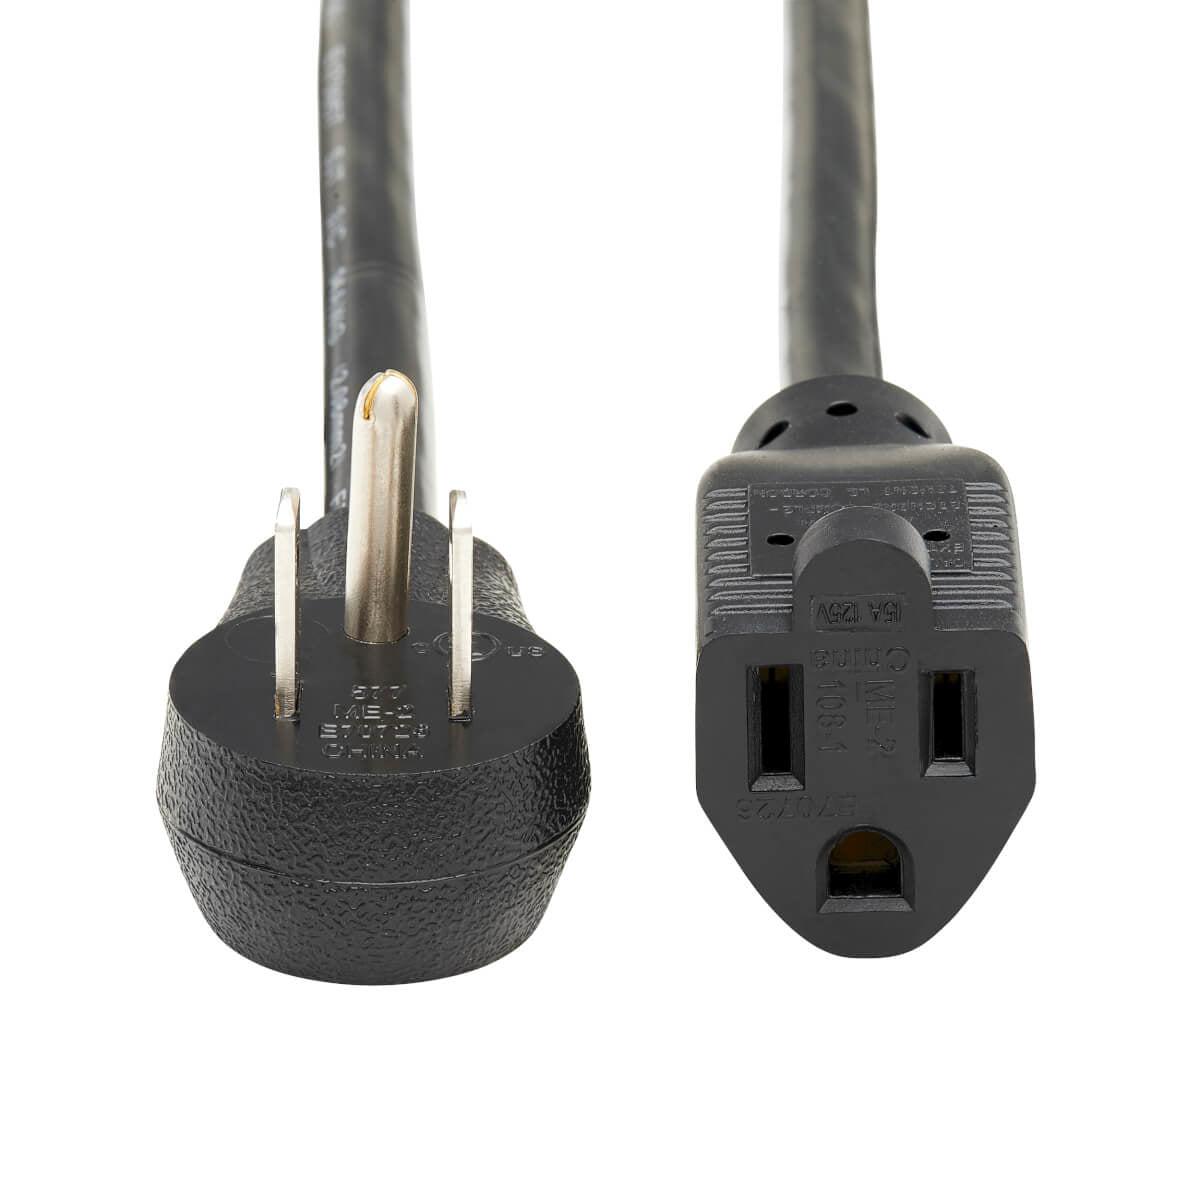 Tripp Lite P024-003-13A15D Power Cable Black 0.9 M Nema 5-15P Nema 5-15R